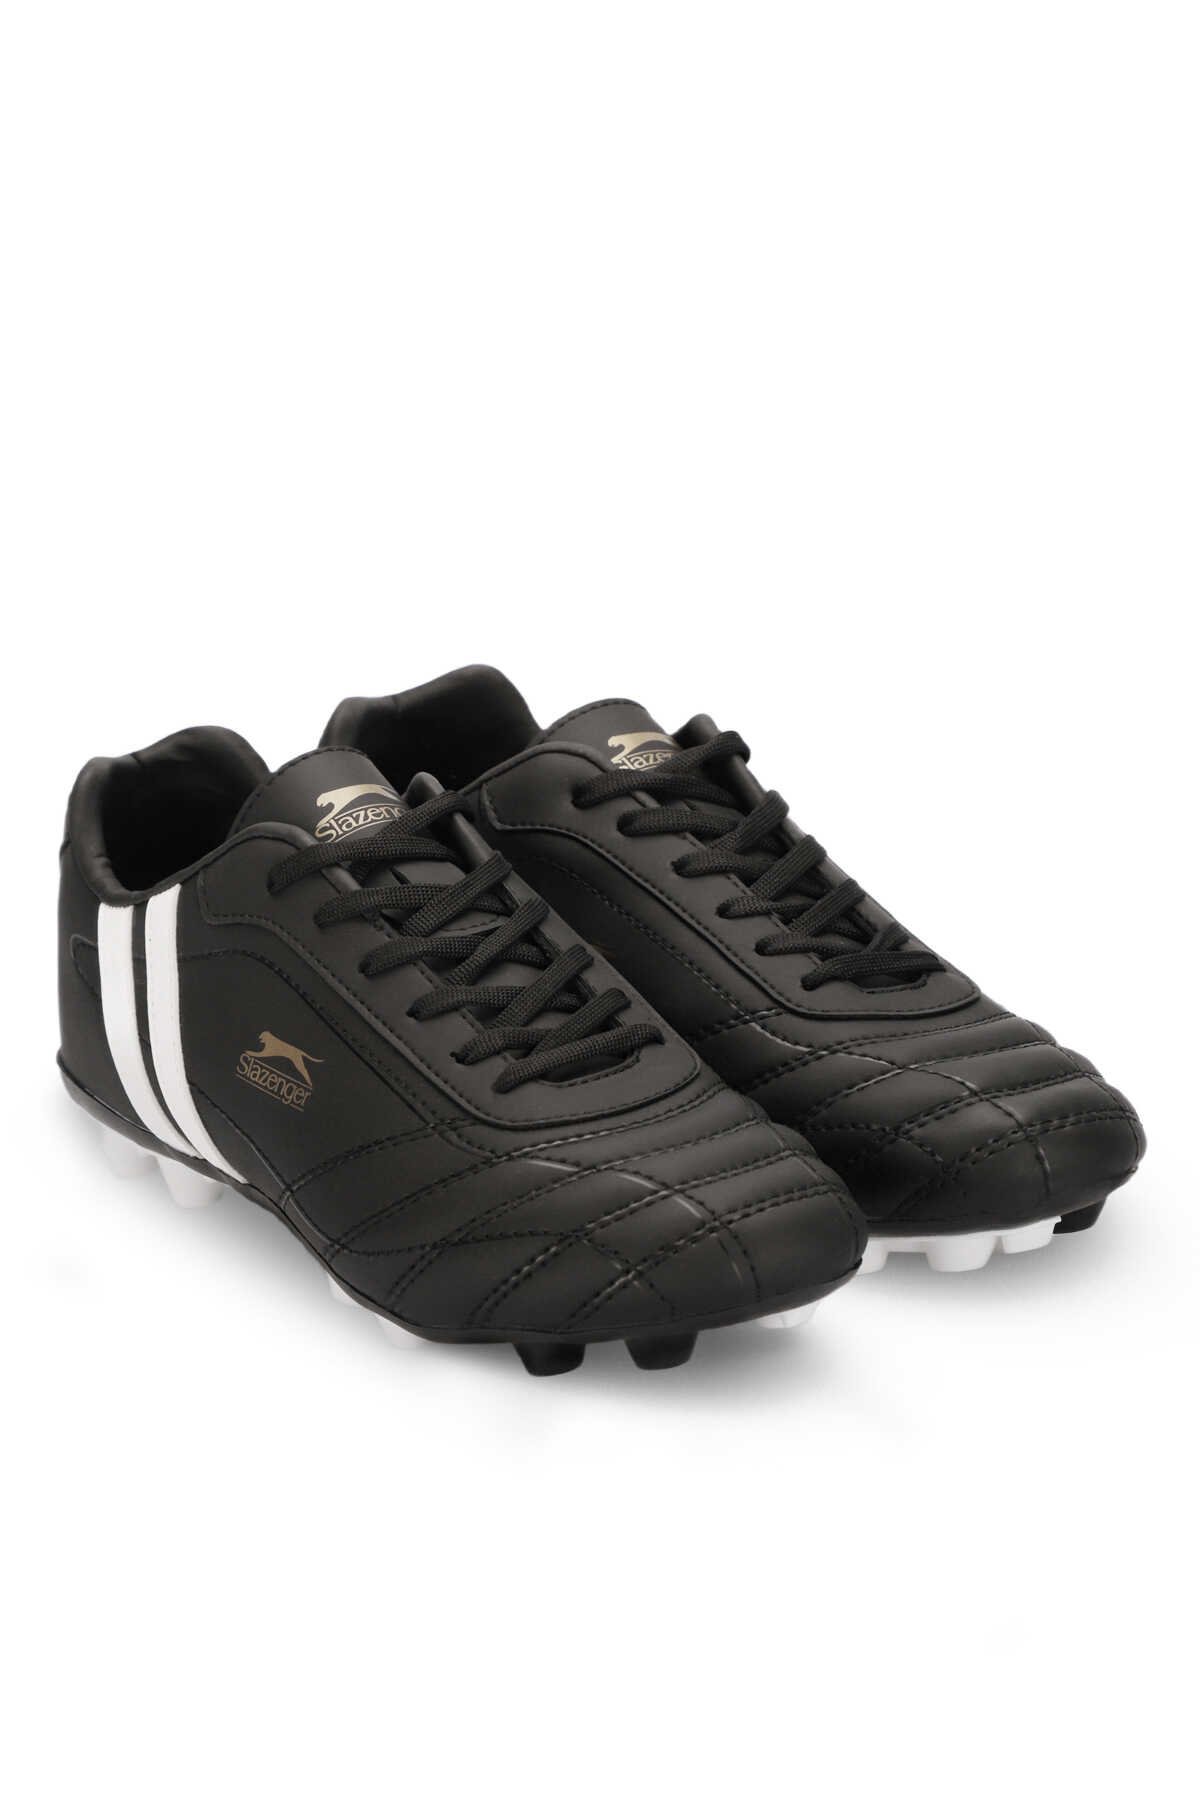 Slazenger HENRIK KR Futbol Erkek Krampon Ayakkabı Siyah / Beyaz